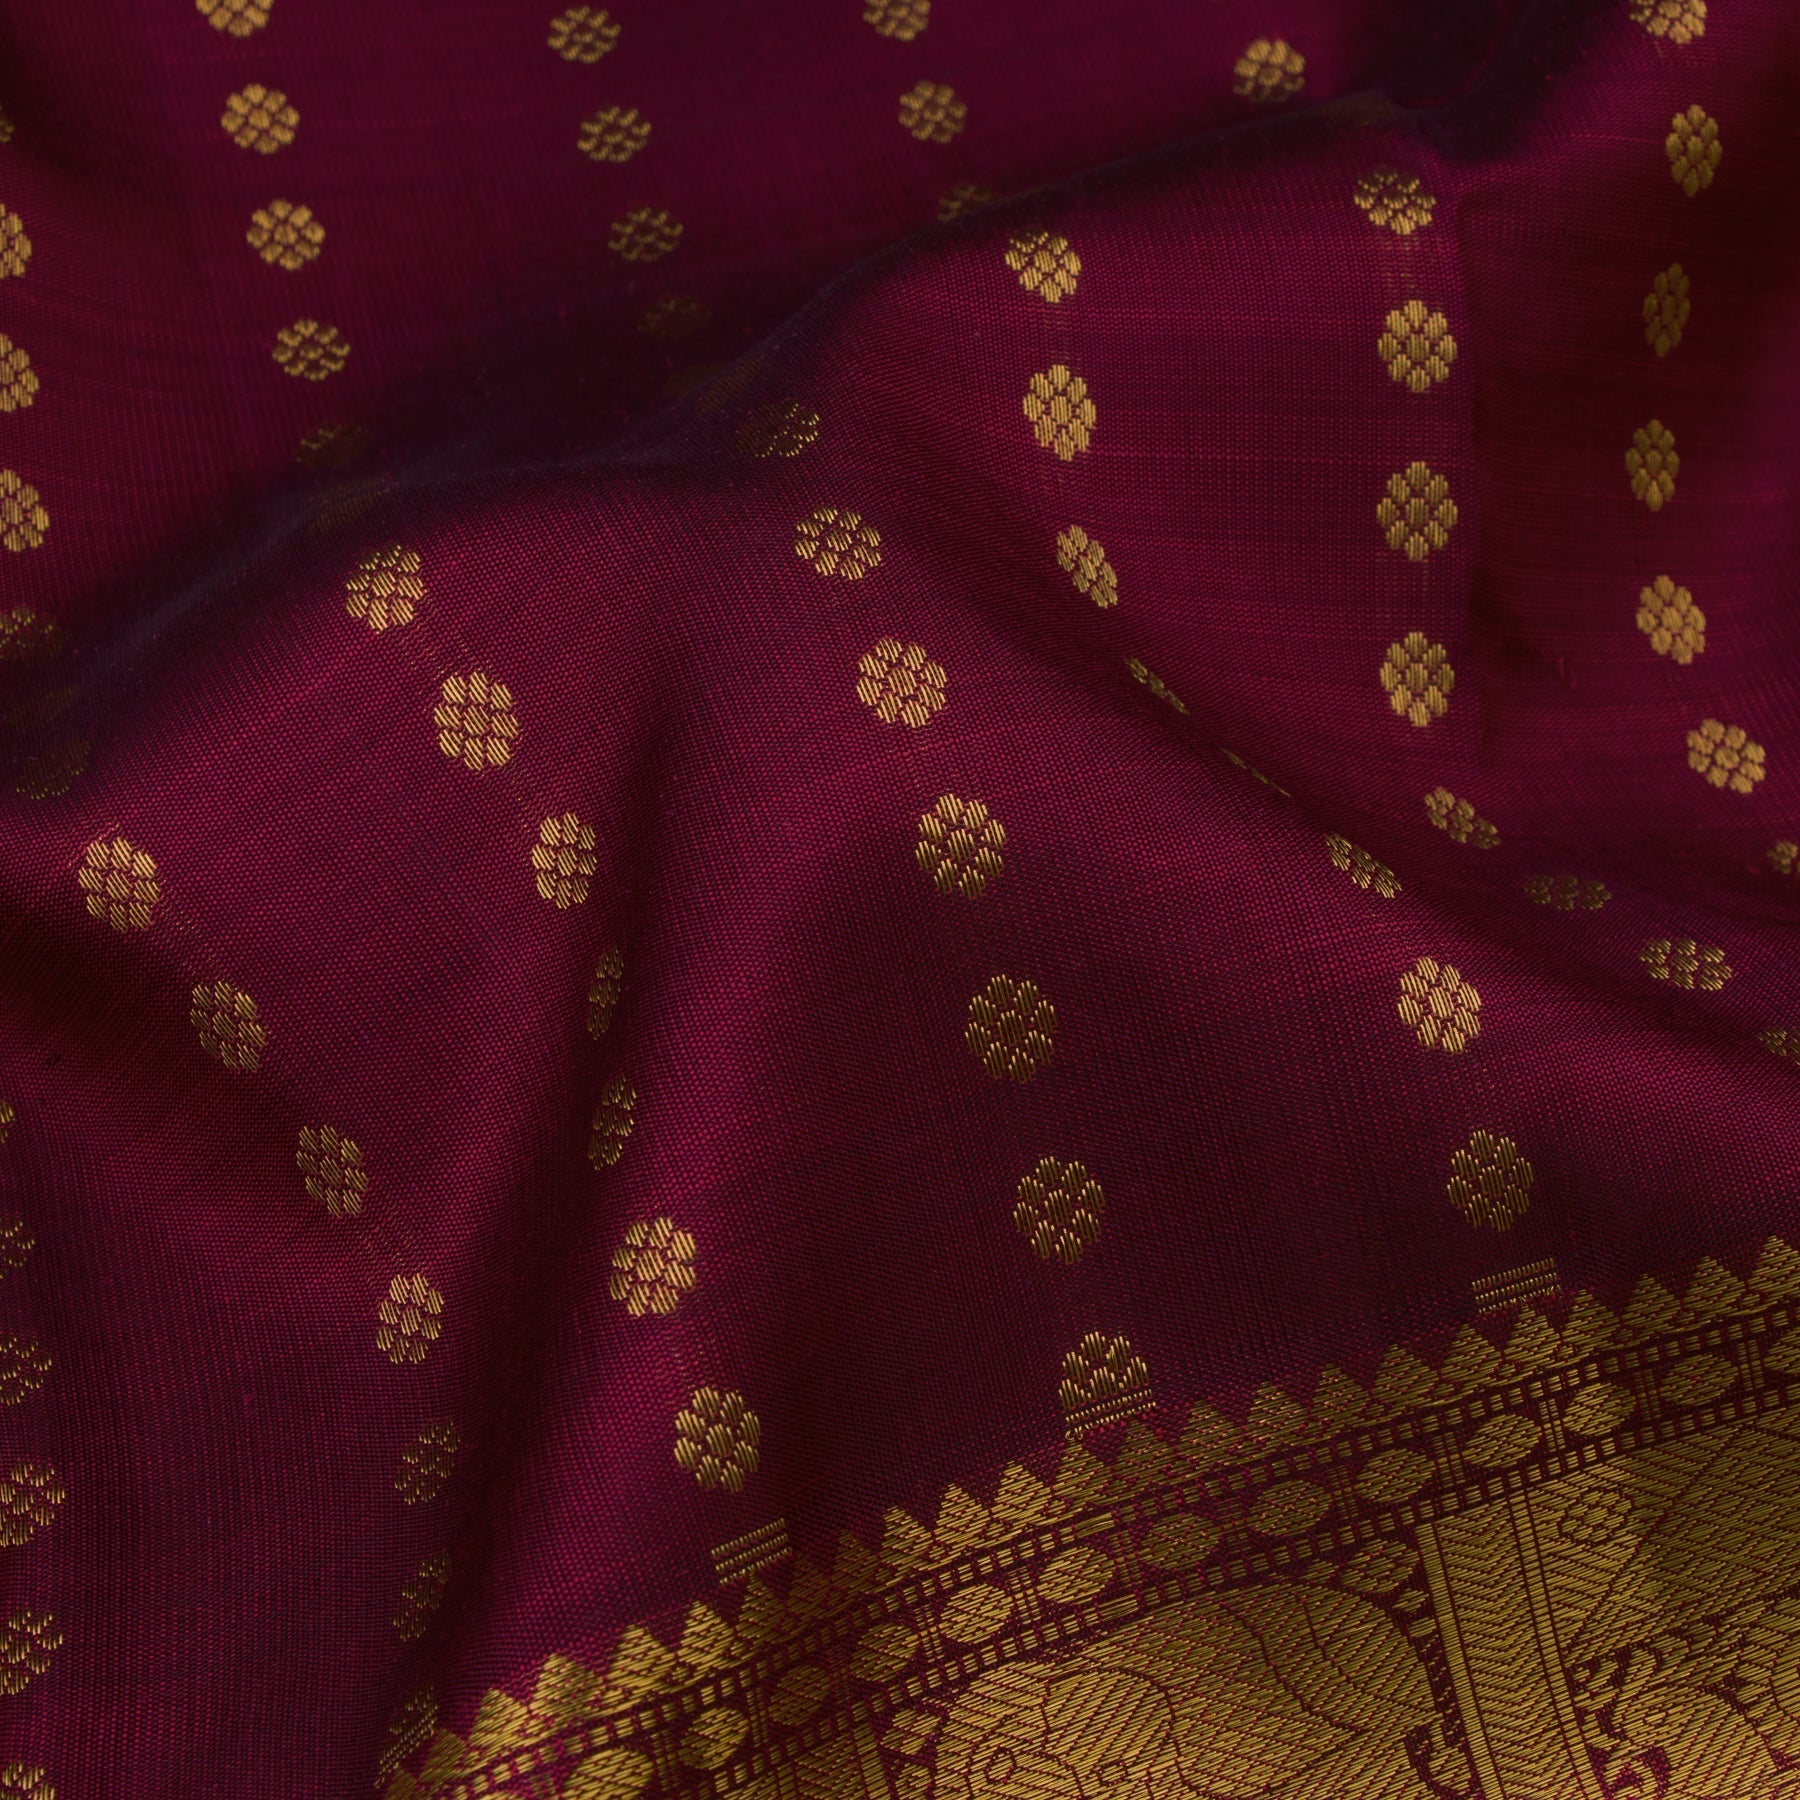 Kanakavalli Kanjivaram Silk Sari 22-599-HS001-09333 - Fabric View